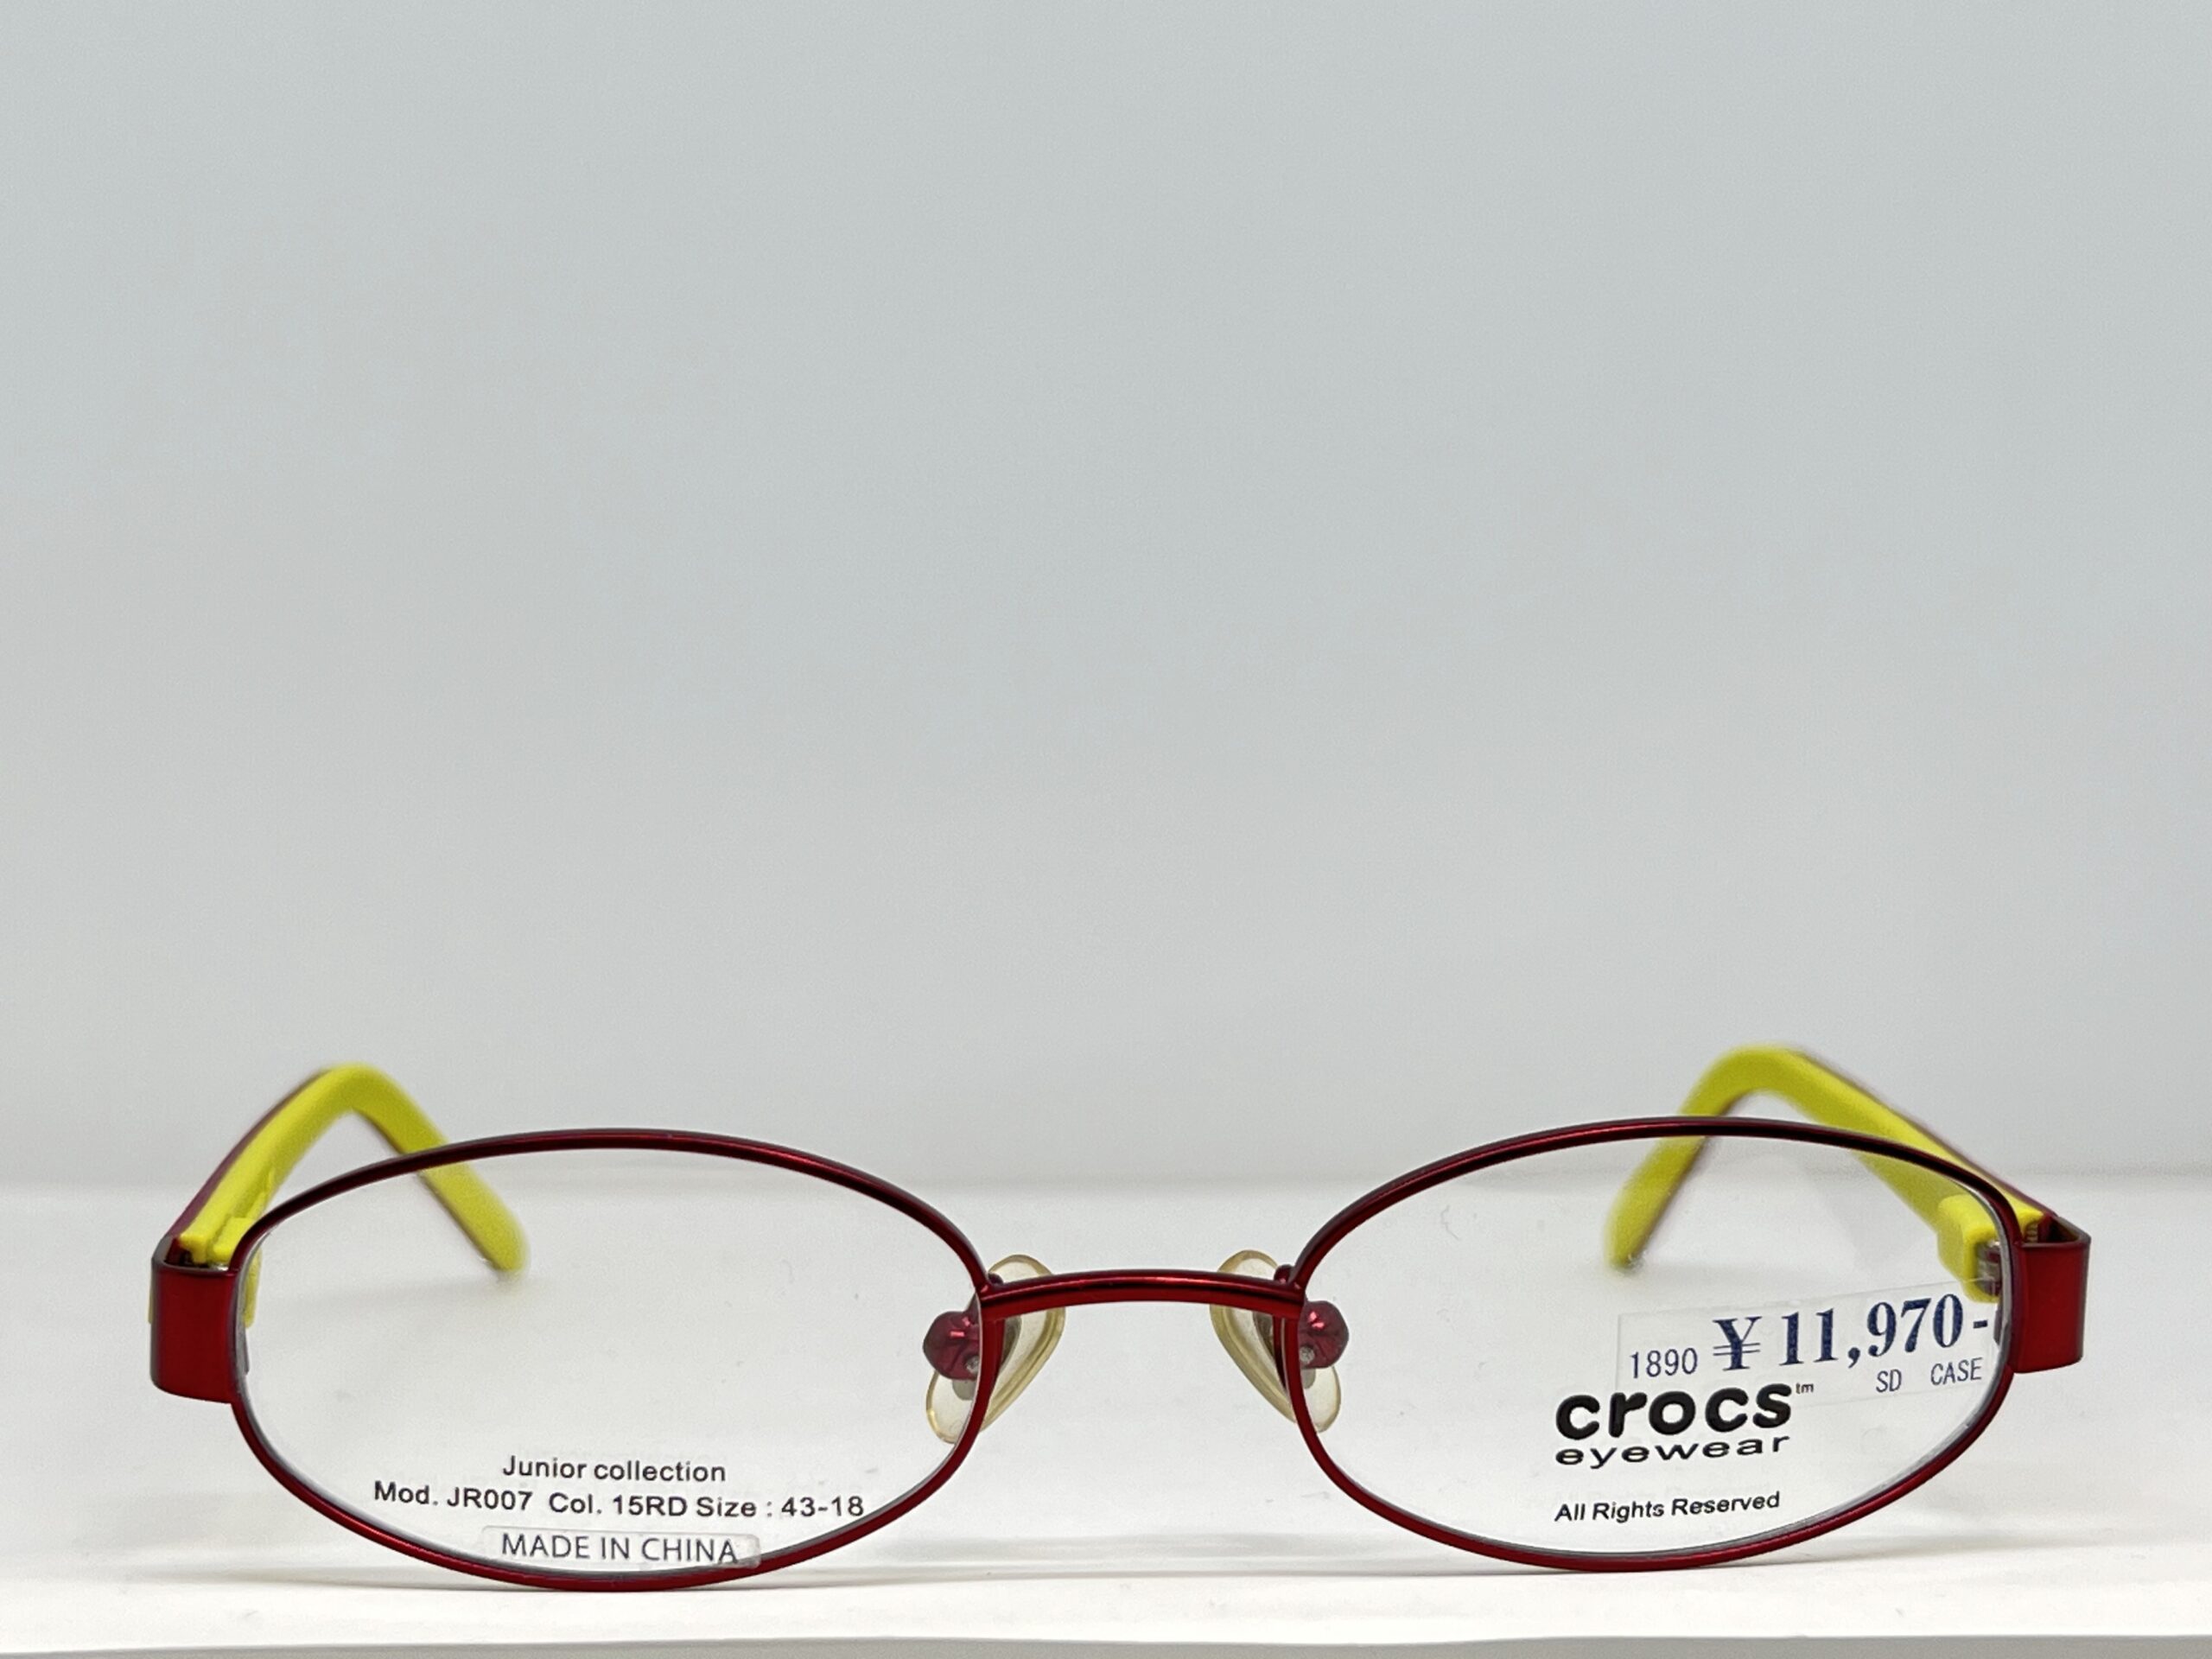 crocs eyewear Junior collection Mod.JR007スライド02